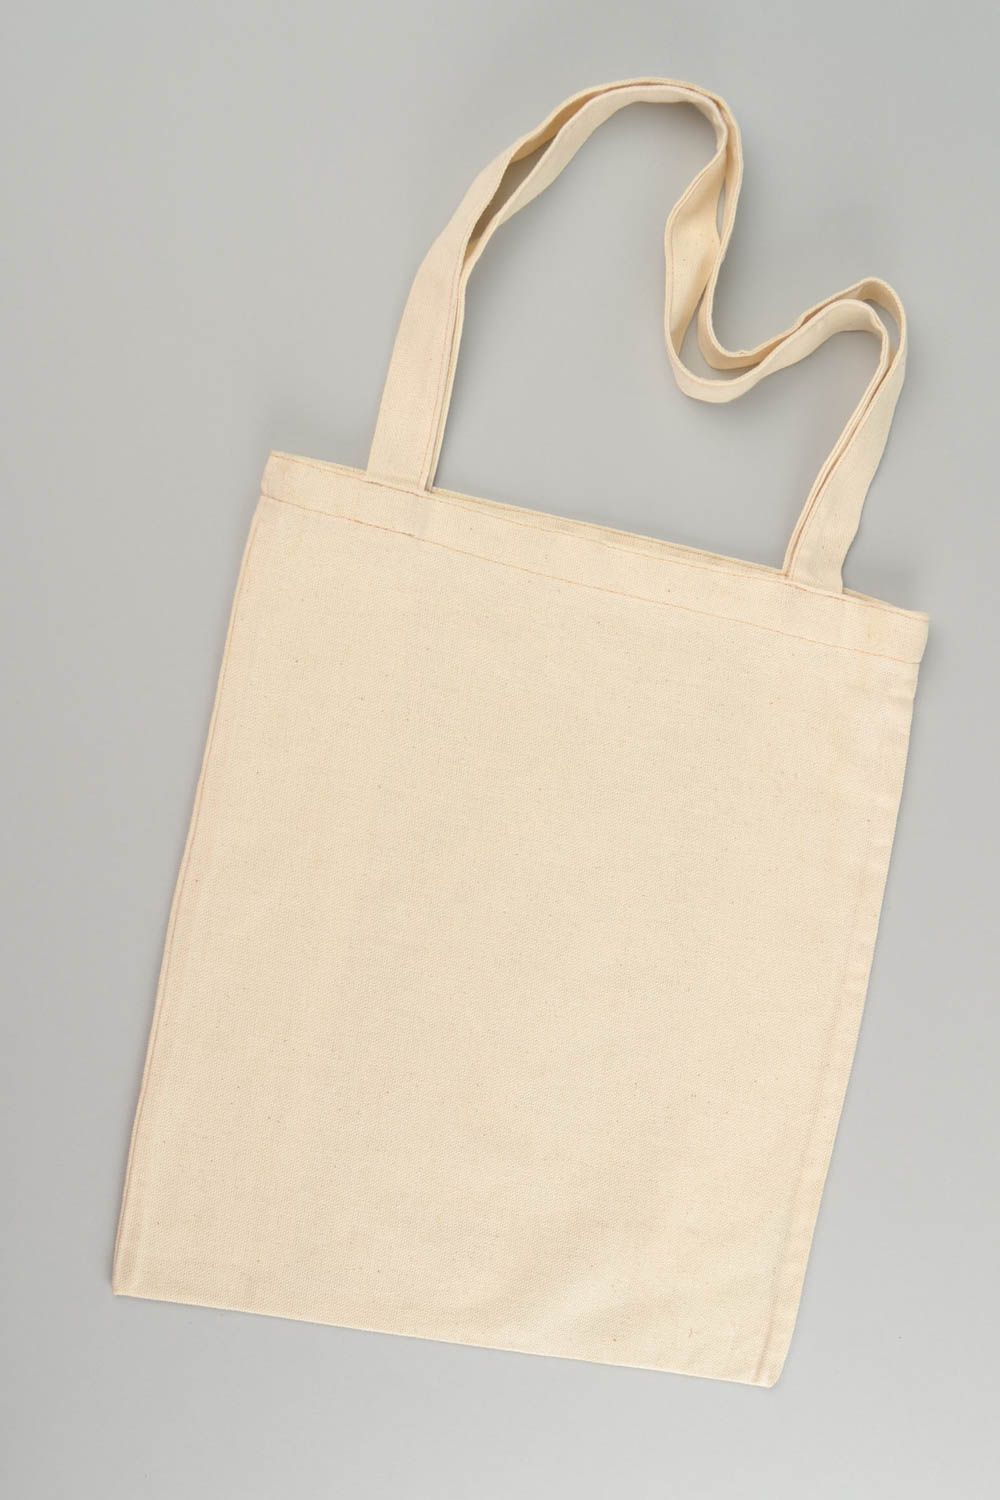 Женская сумка из ткани в эко-стиле большая вместительная ручной работы фото 4